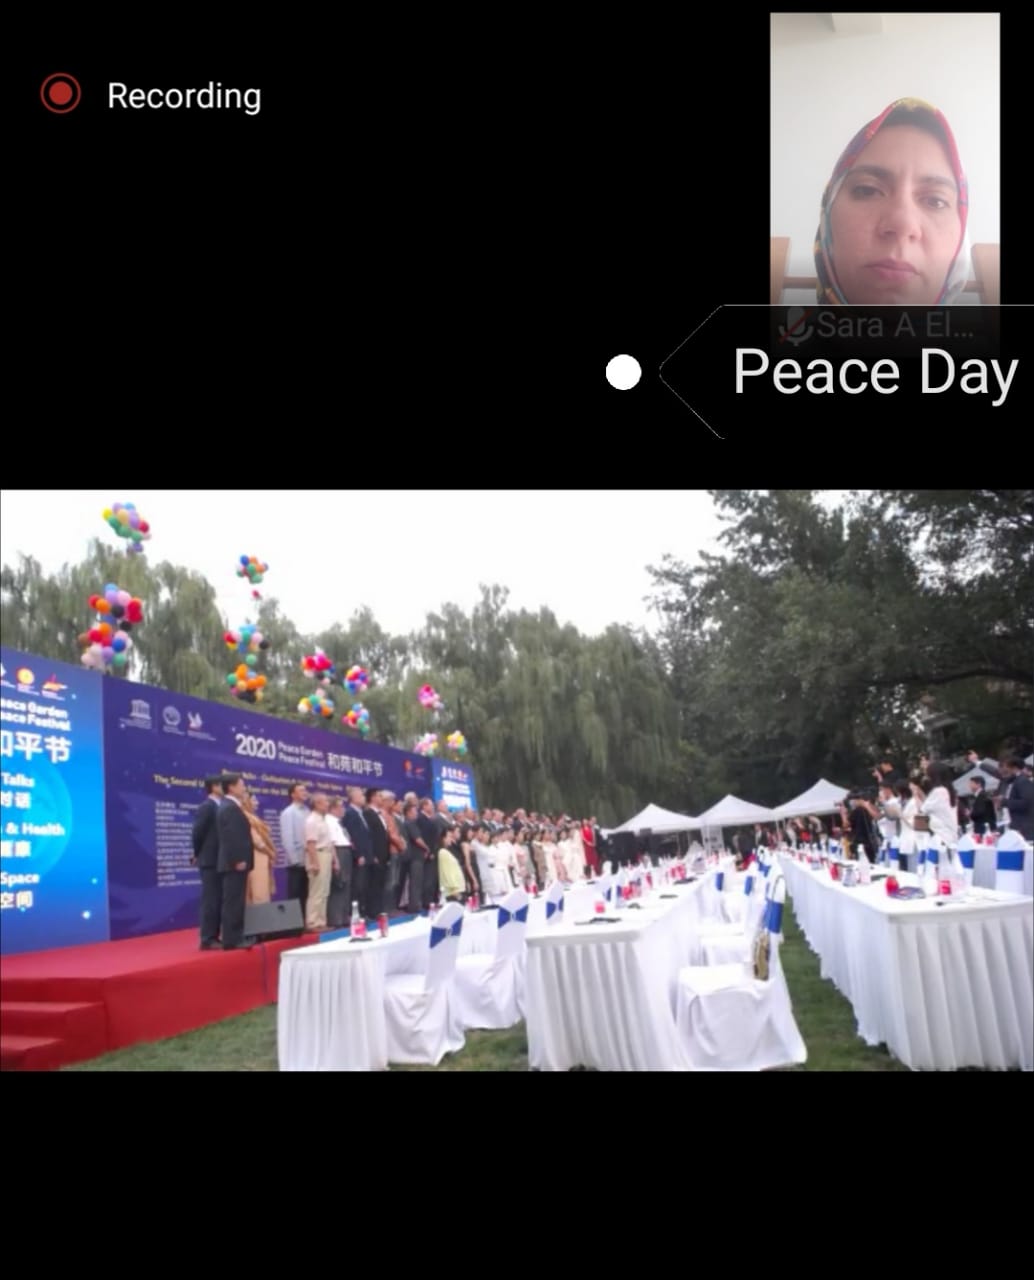   مسئولون ودبلوماسيون في احتفالية مهرجان السلام حديقة السلام